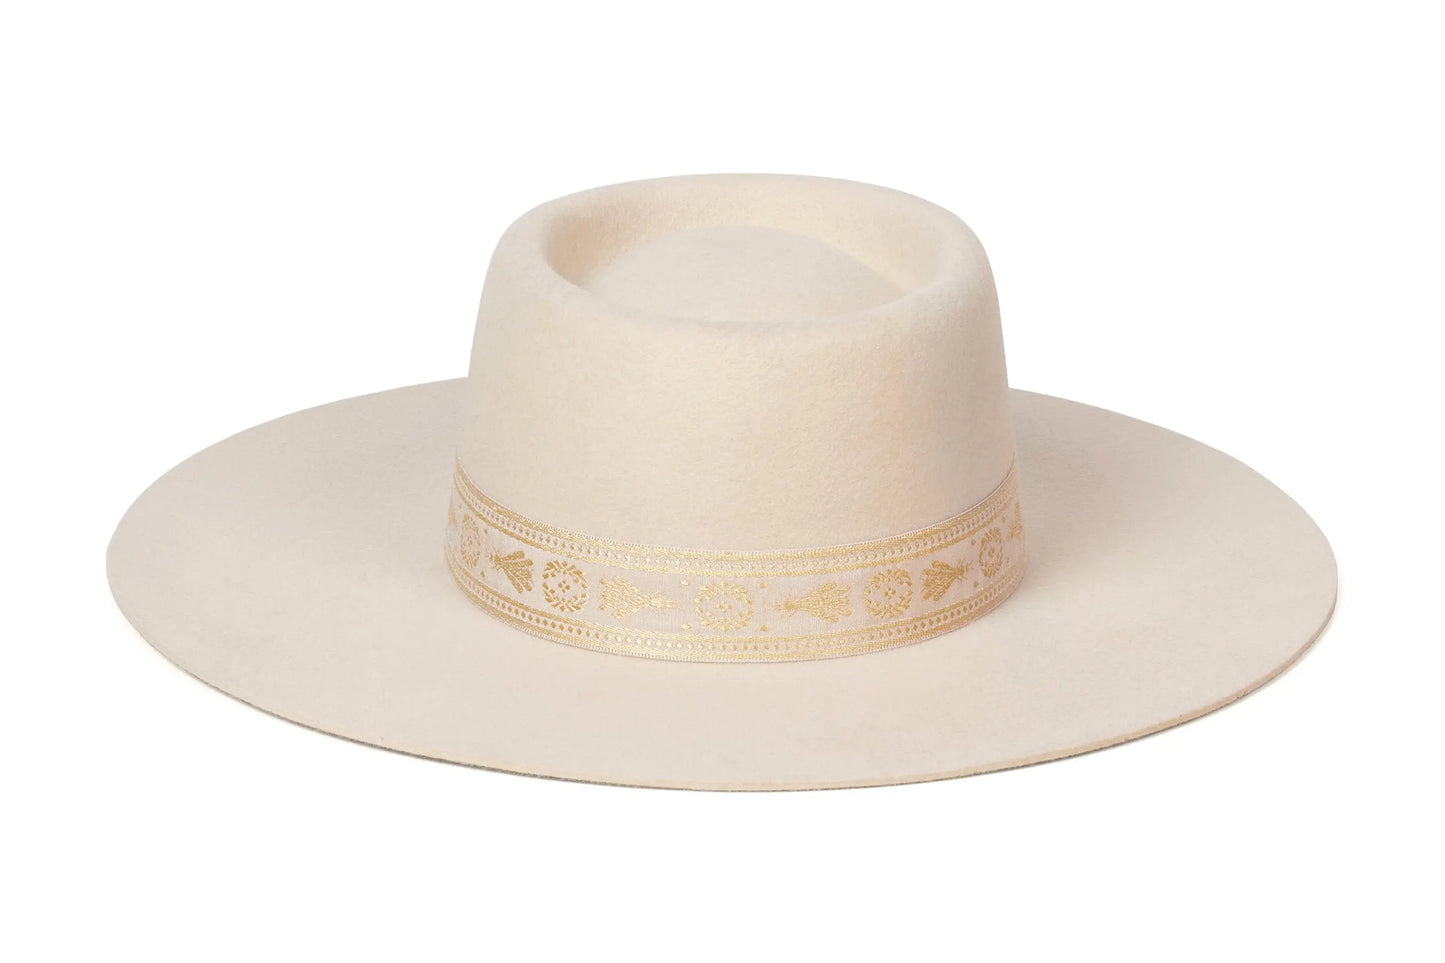 Lack of Color Juno Boater Hat - Cream LACK OF COLOR